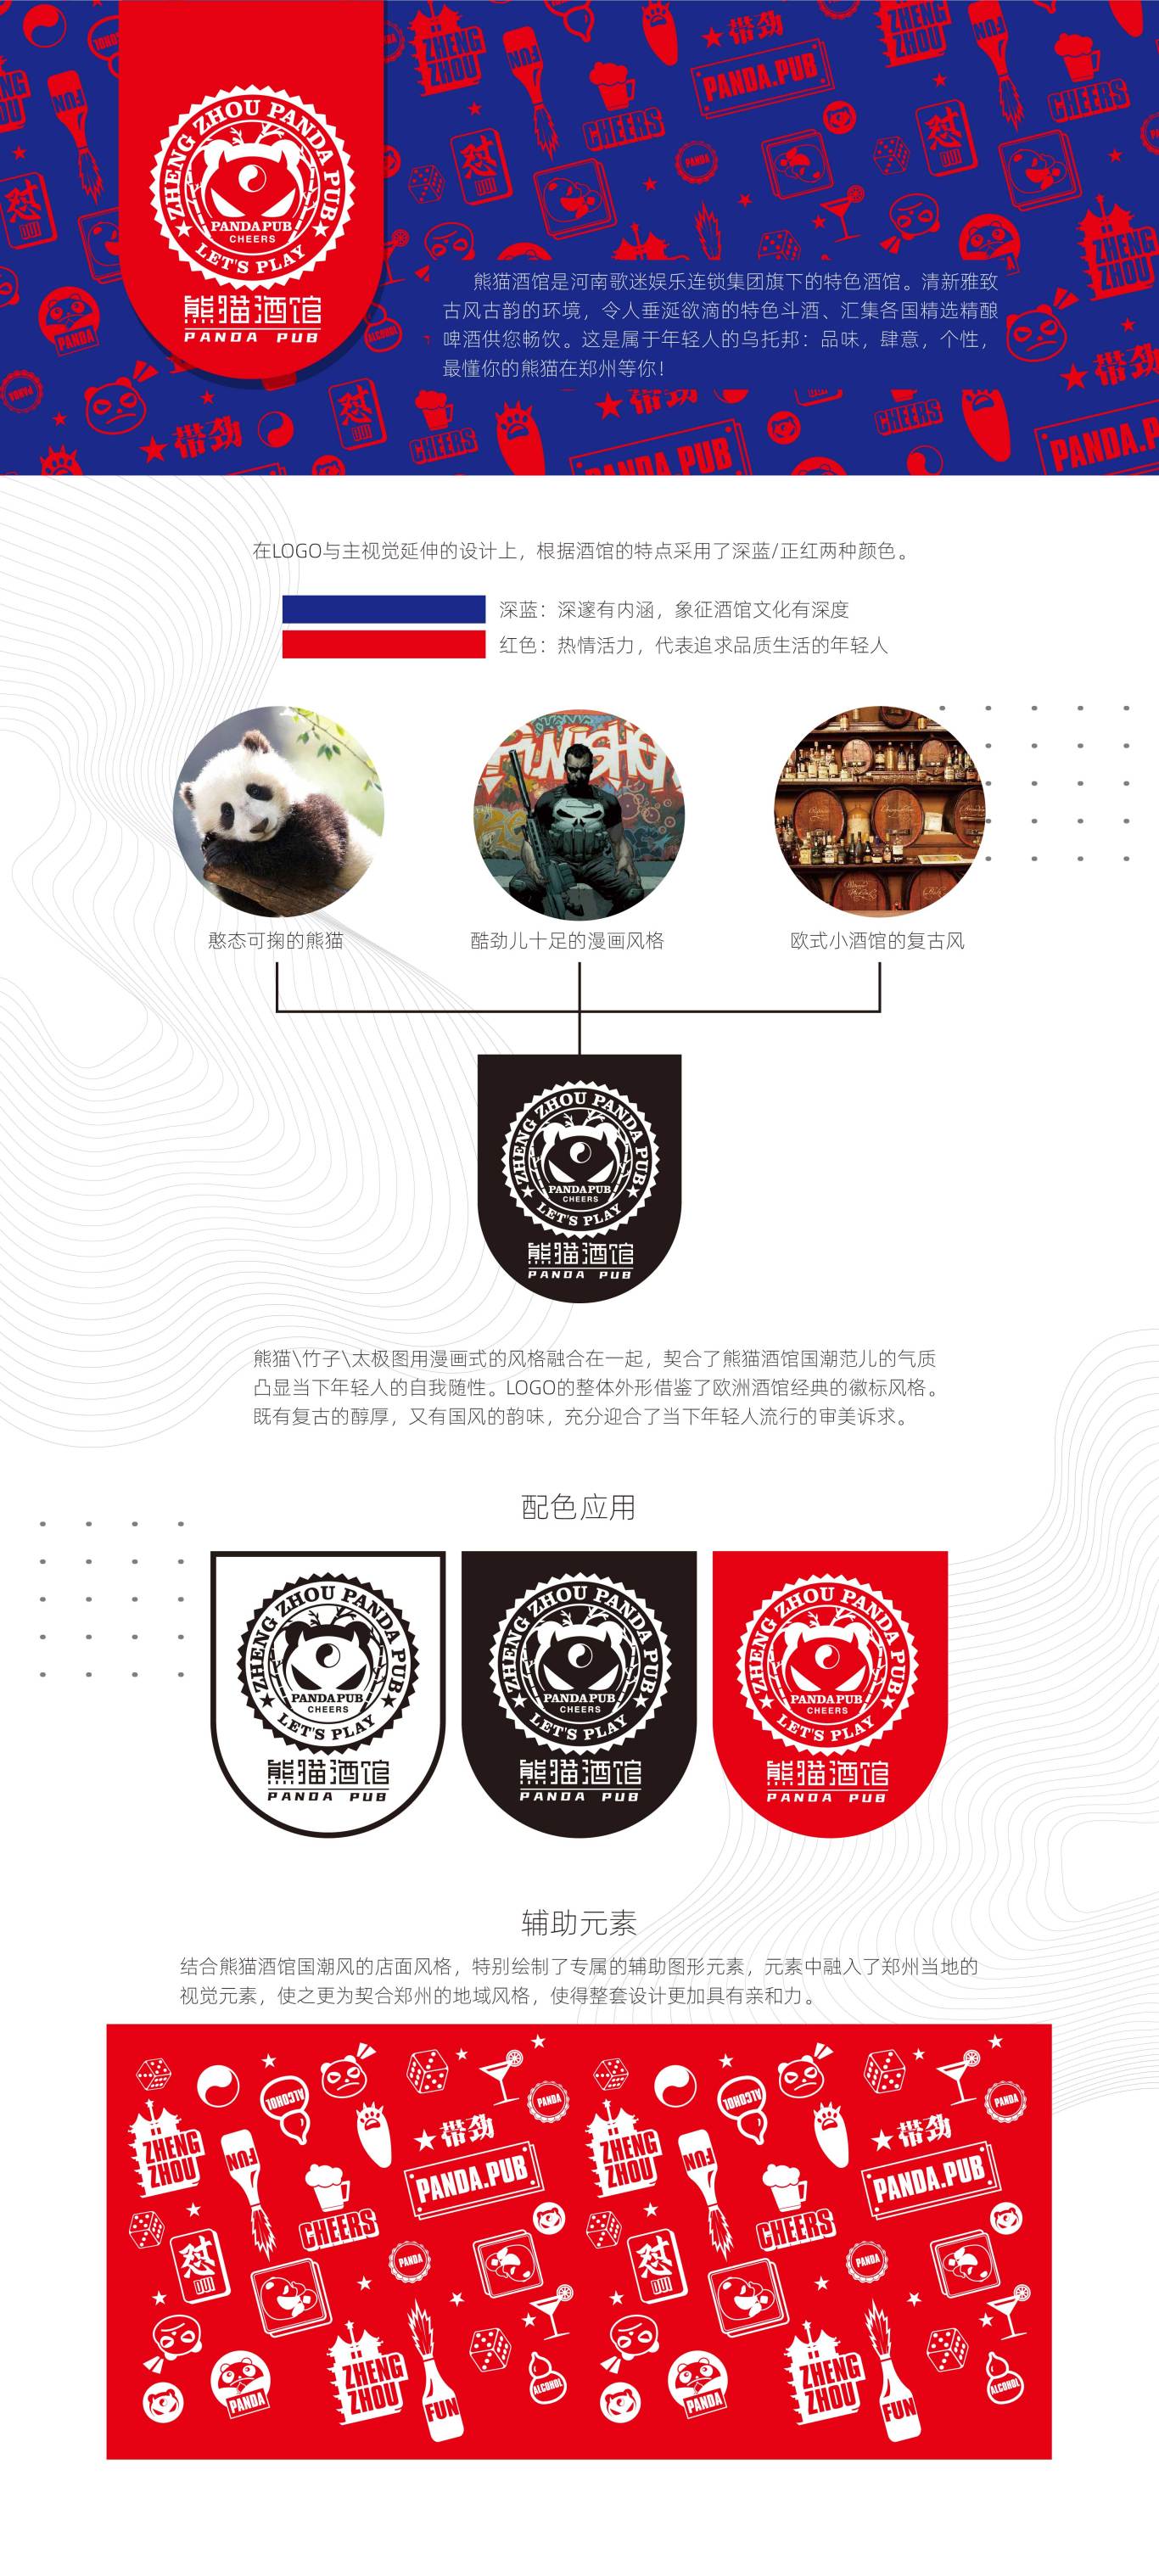 歌迷娱乐连锁 熊猫酒馆  VI设计图0